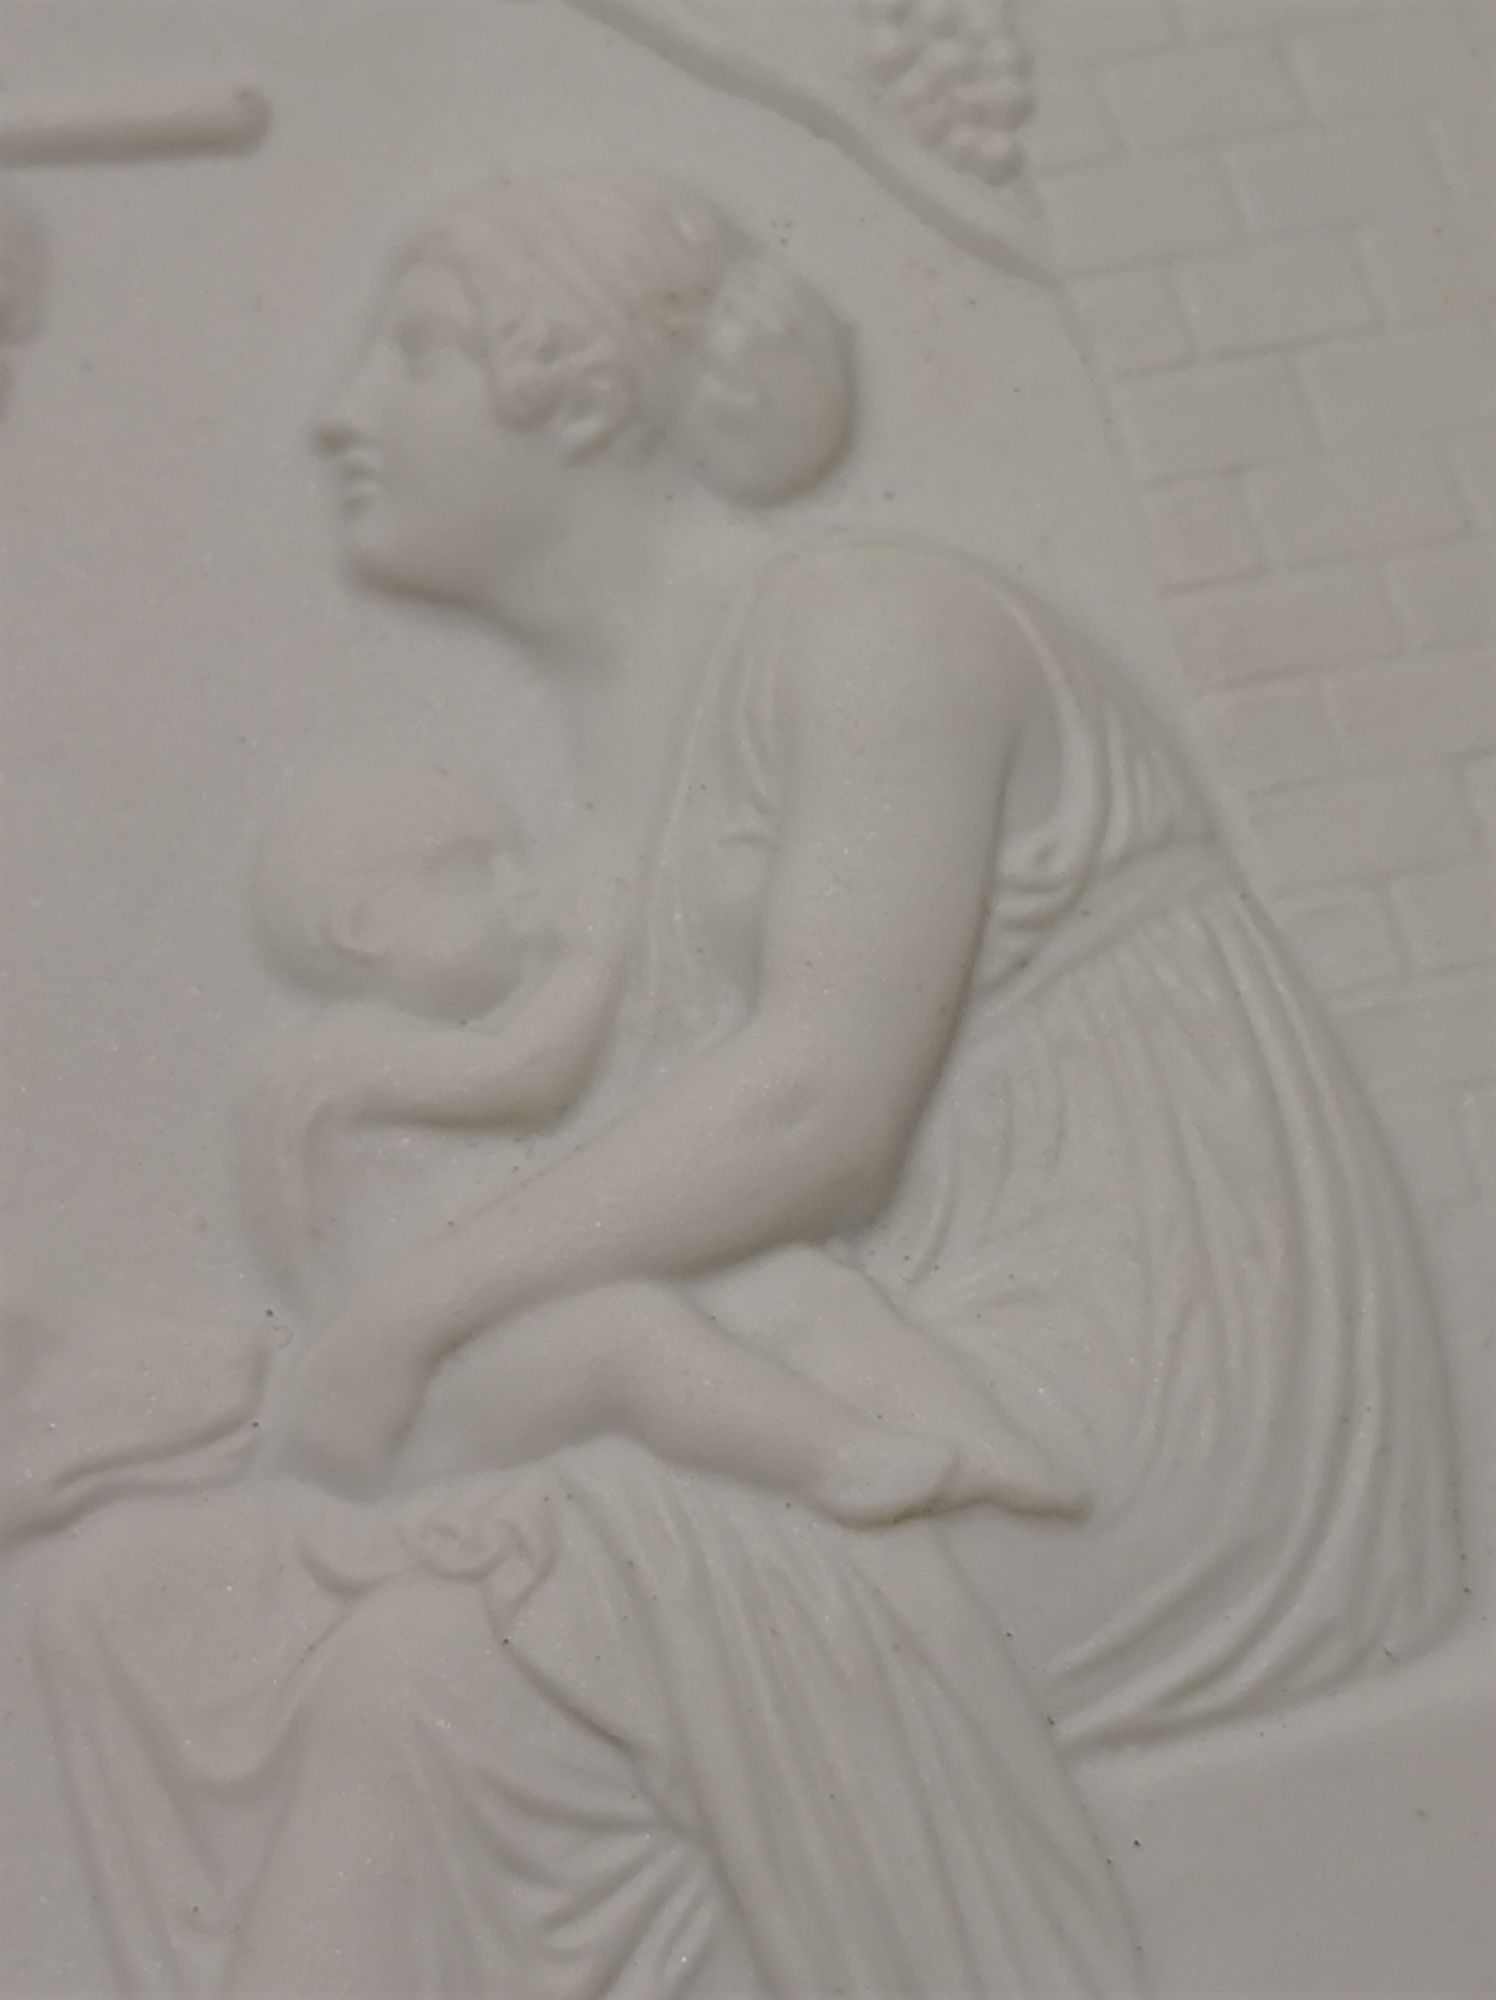 Cztery pory roku B&G Kopenhaga relief porcelana .Vintage.